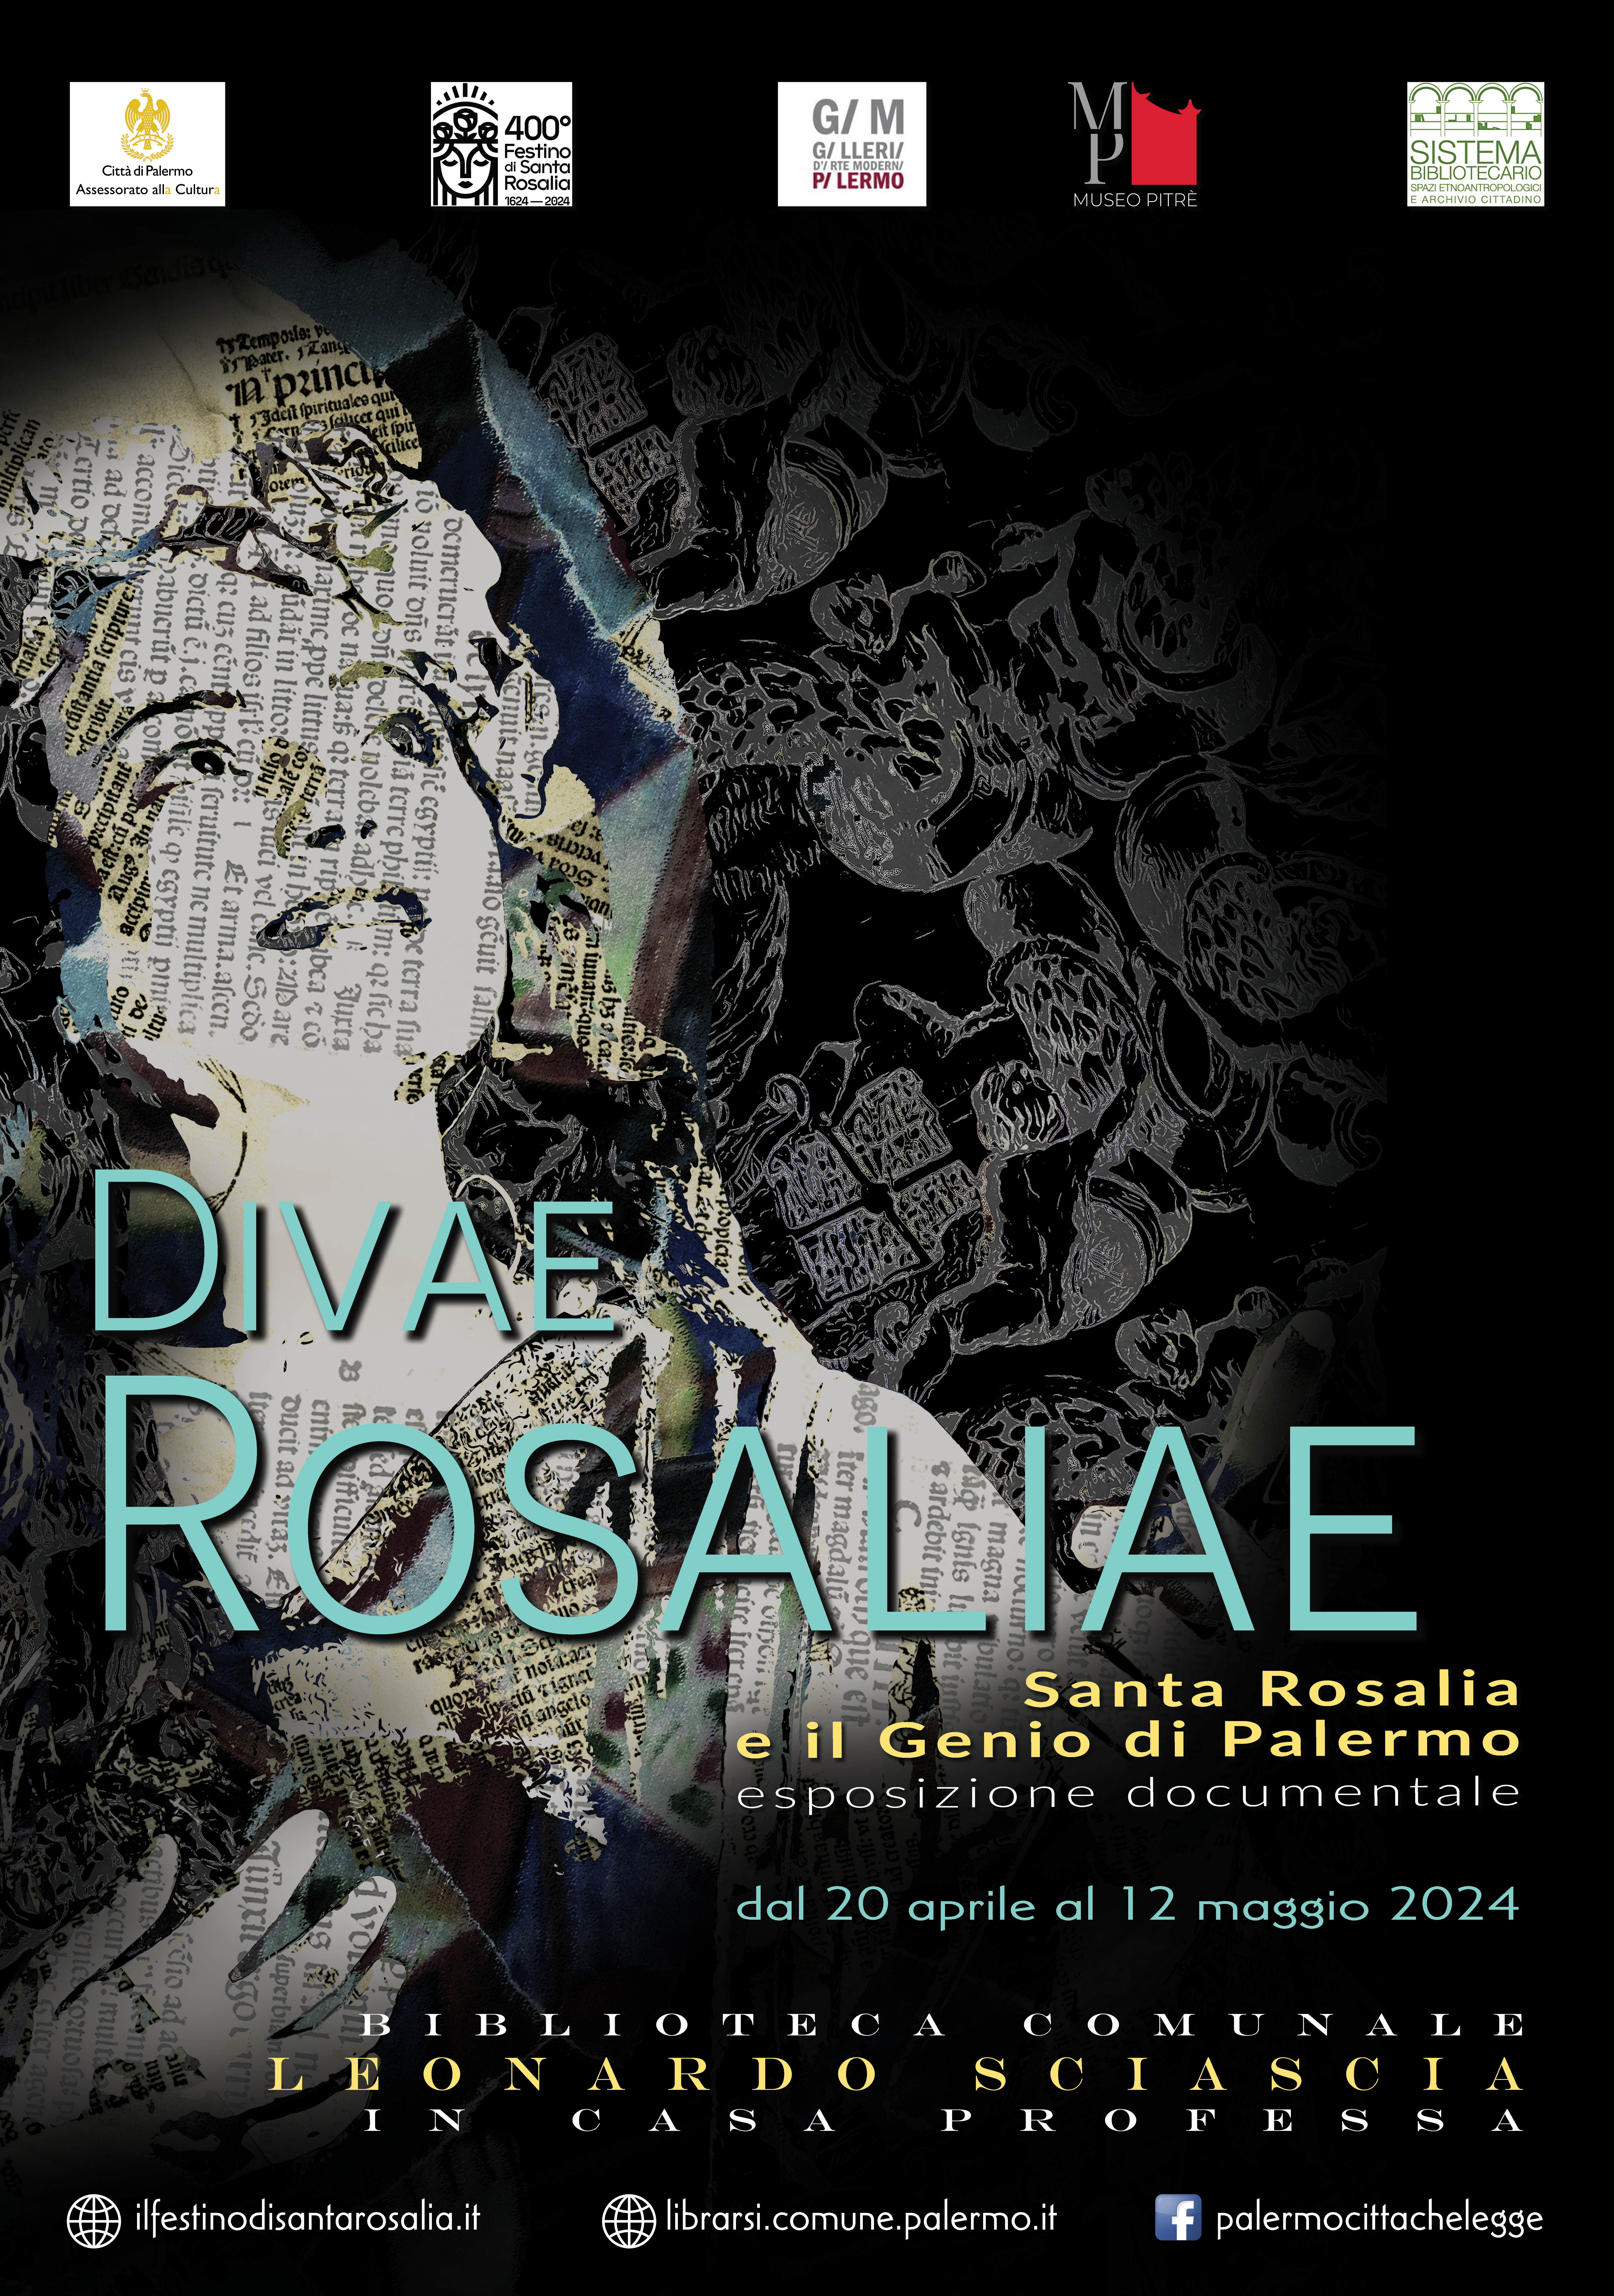 DIVAE ROSALIAE - “Santa Rosalia e il Genio di Palermo”